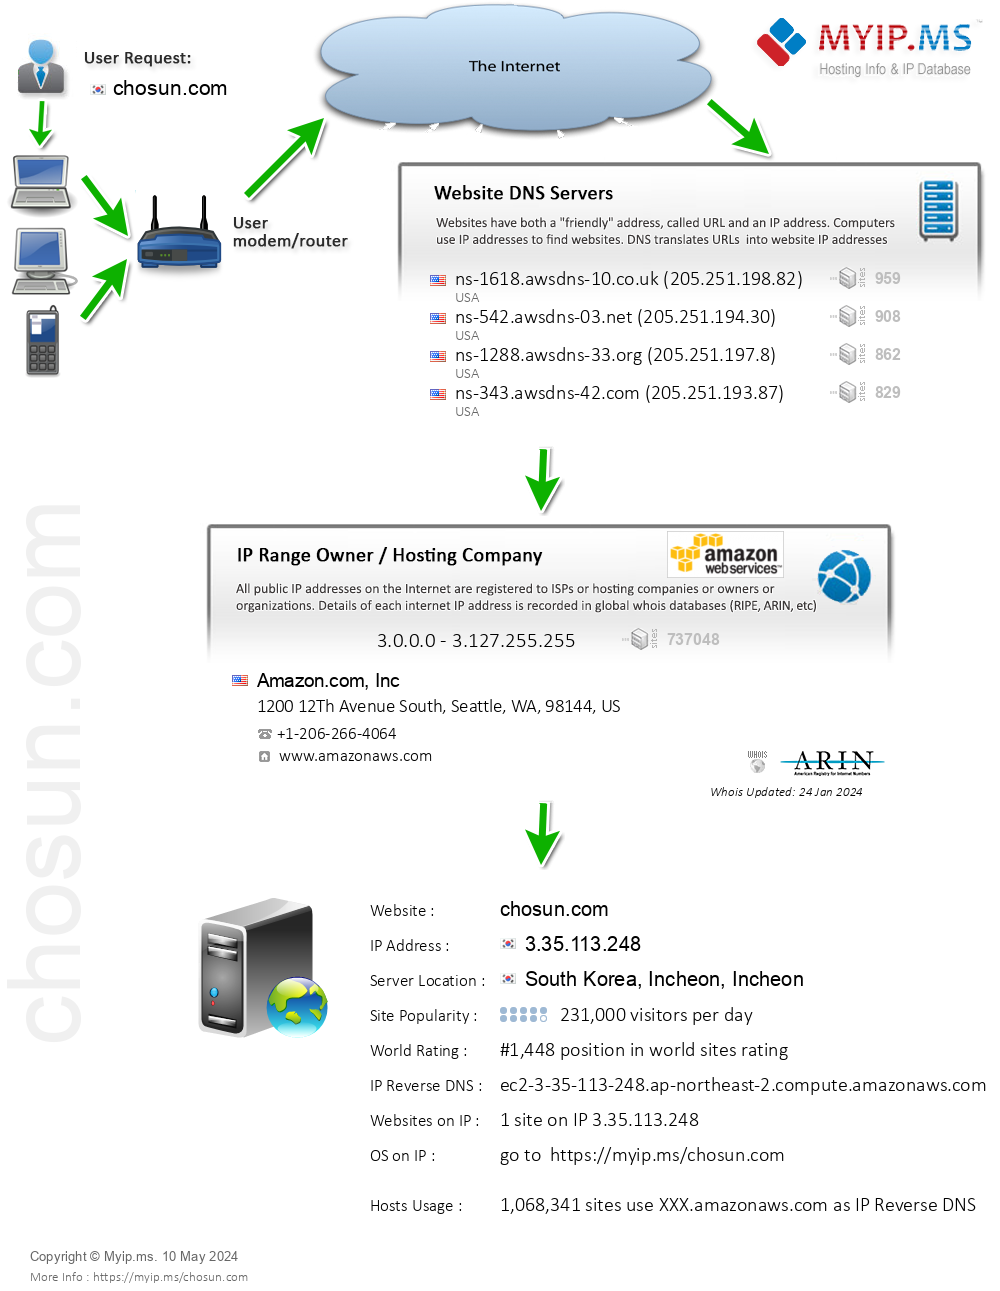 Chosun.com - Website Hosting Visual IP Diagram